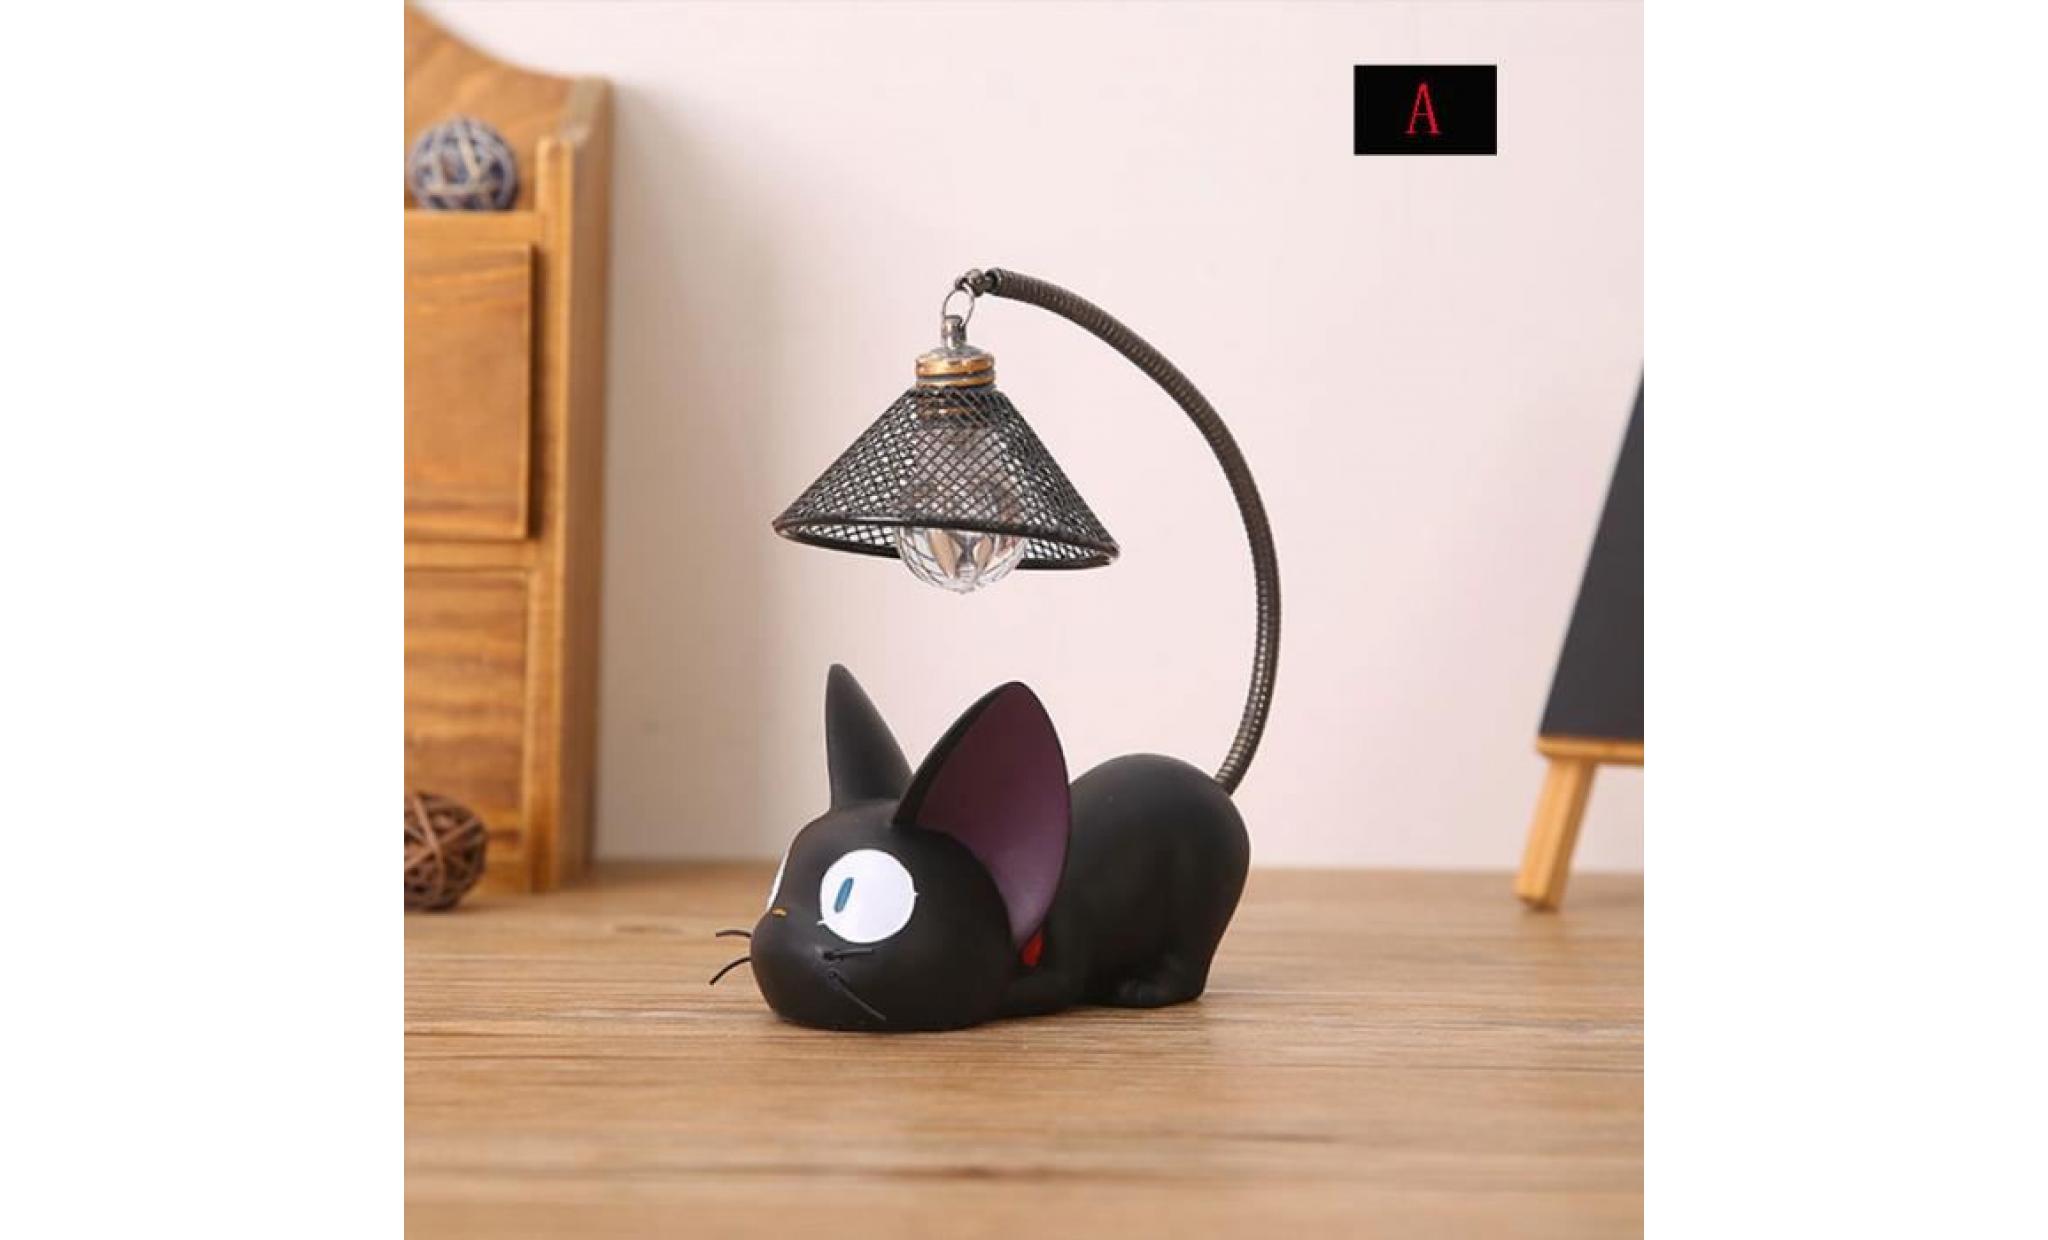 résine chat design lampe creative night light table lampes de chevet pour la lecture (fil de fer abat jour) pas cher